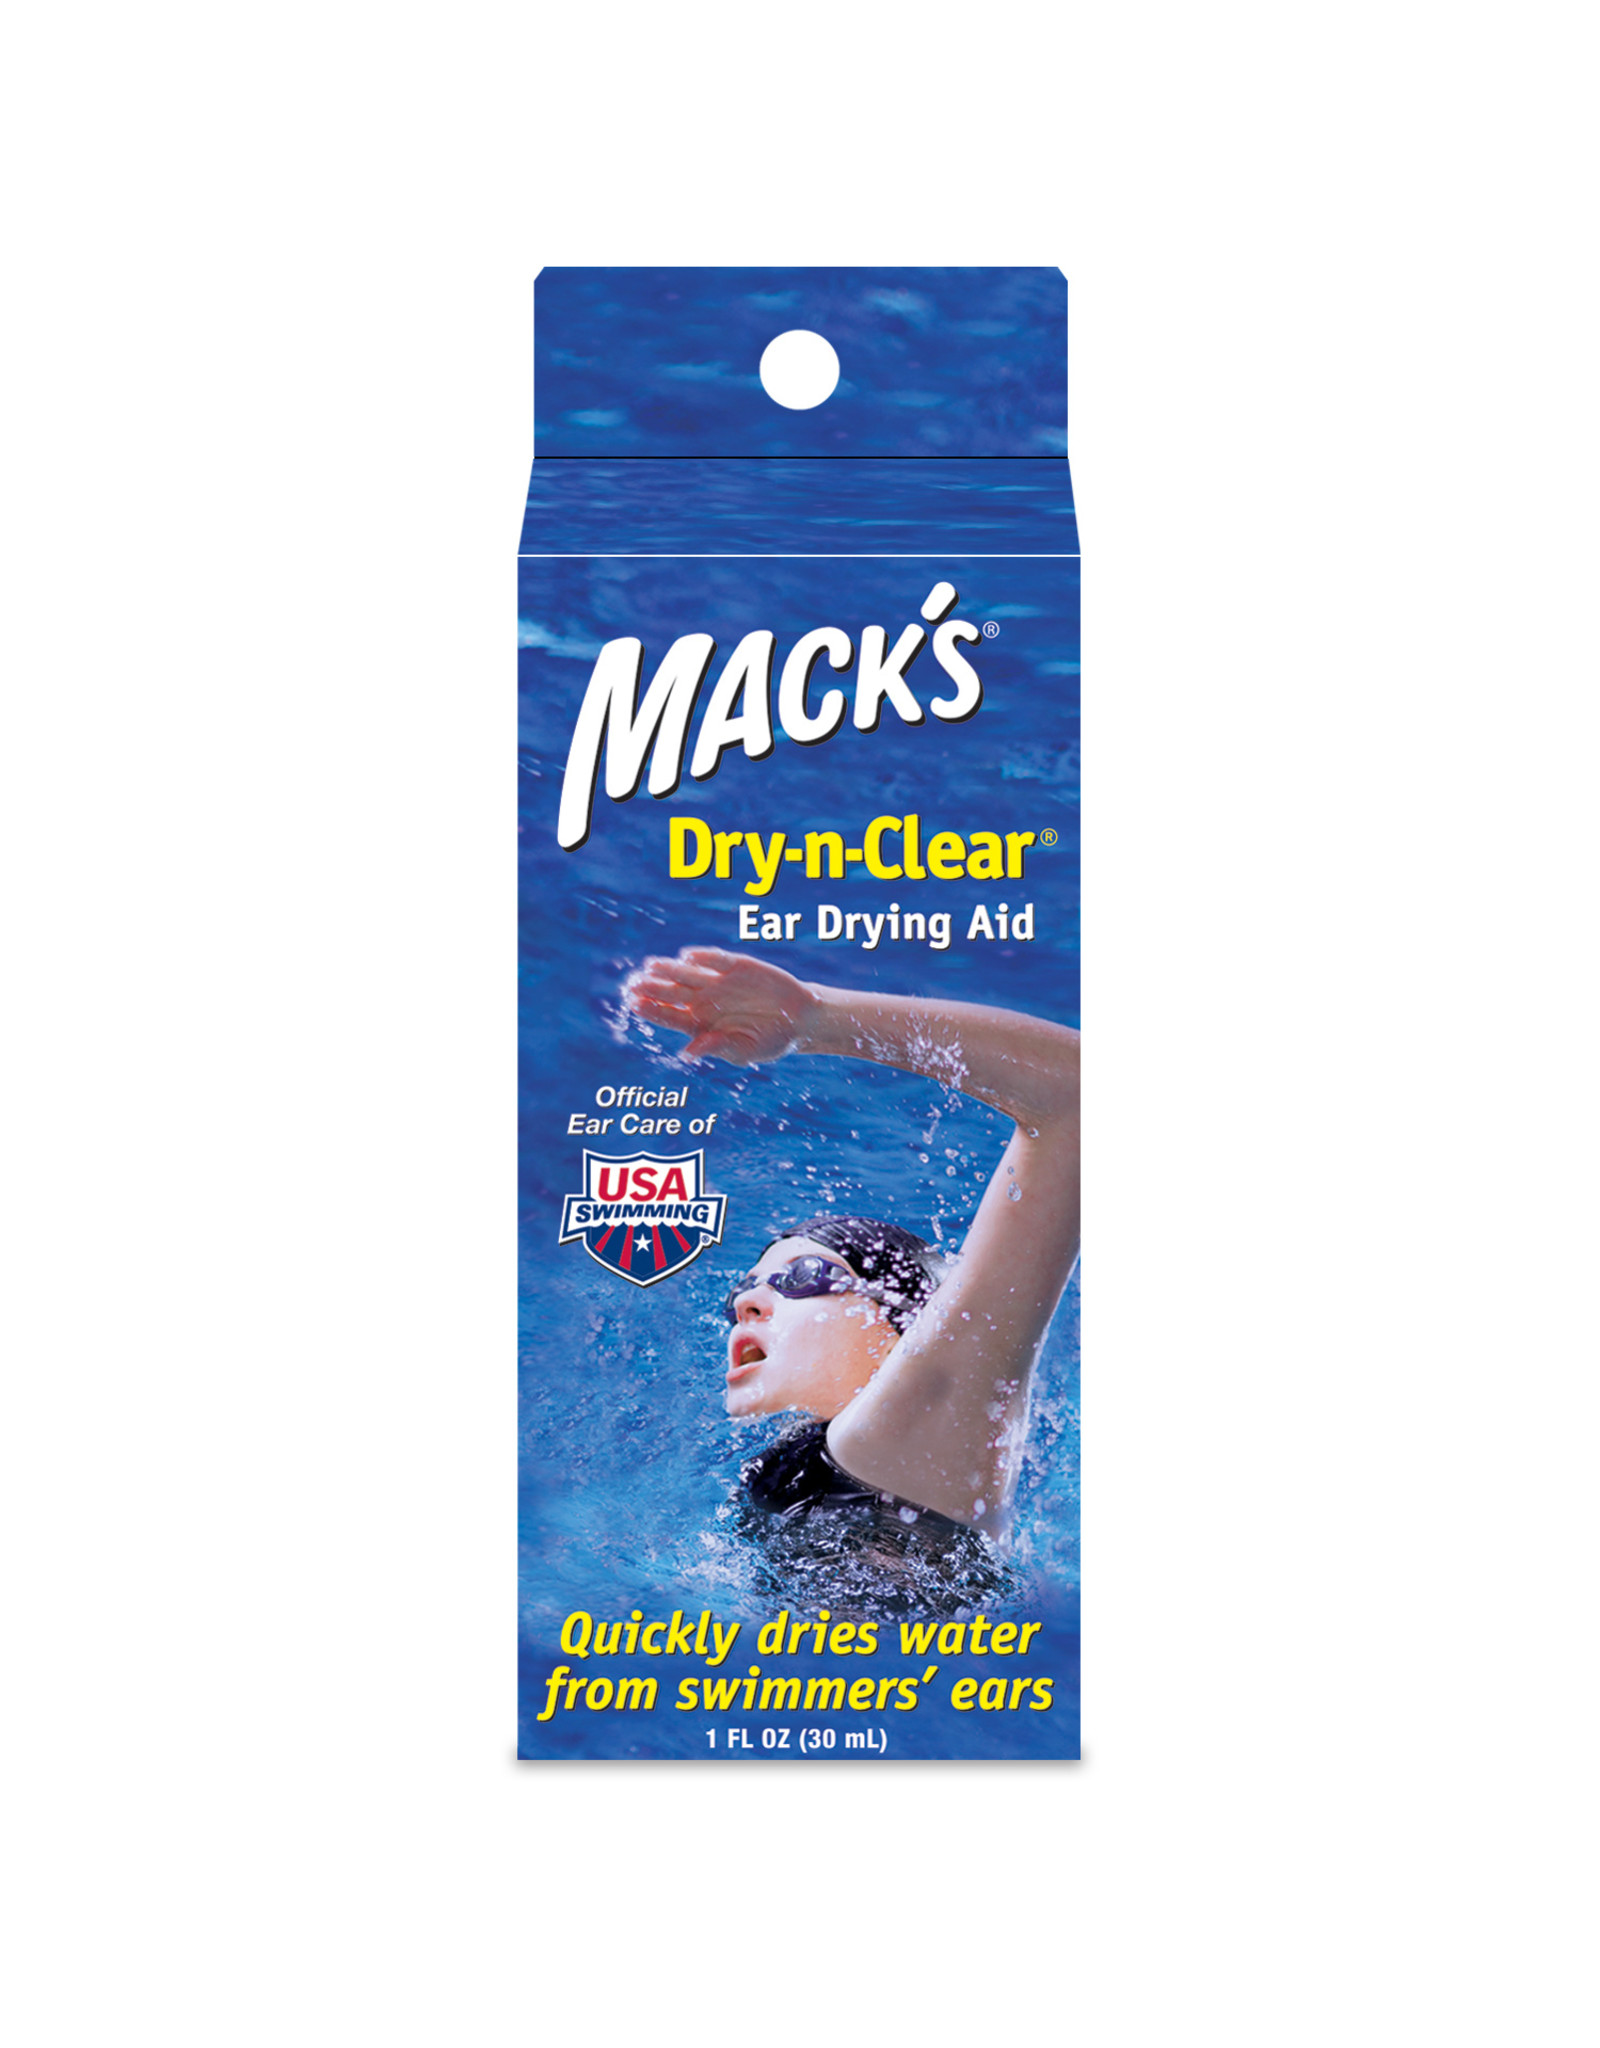 MACK'S DRY-N-CLEAR EAR DRYING